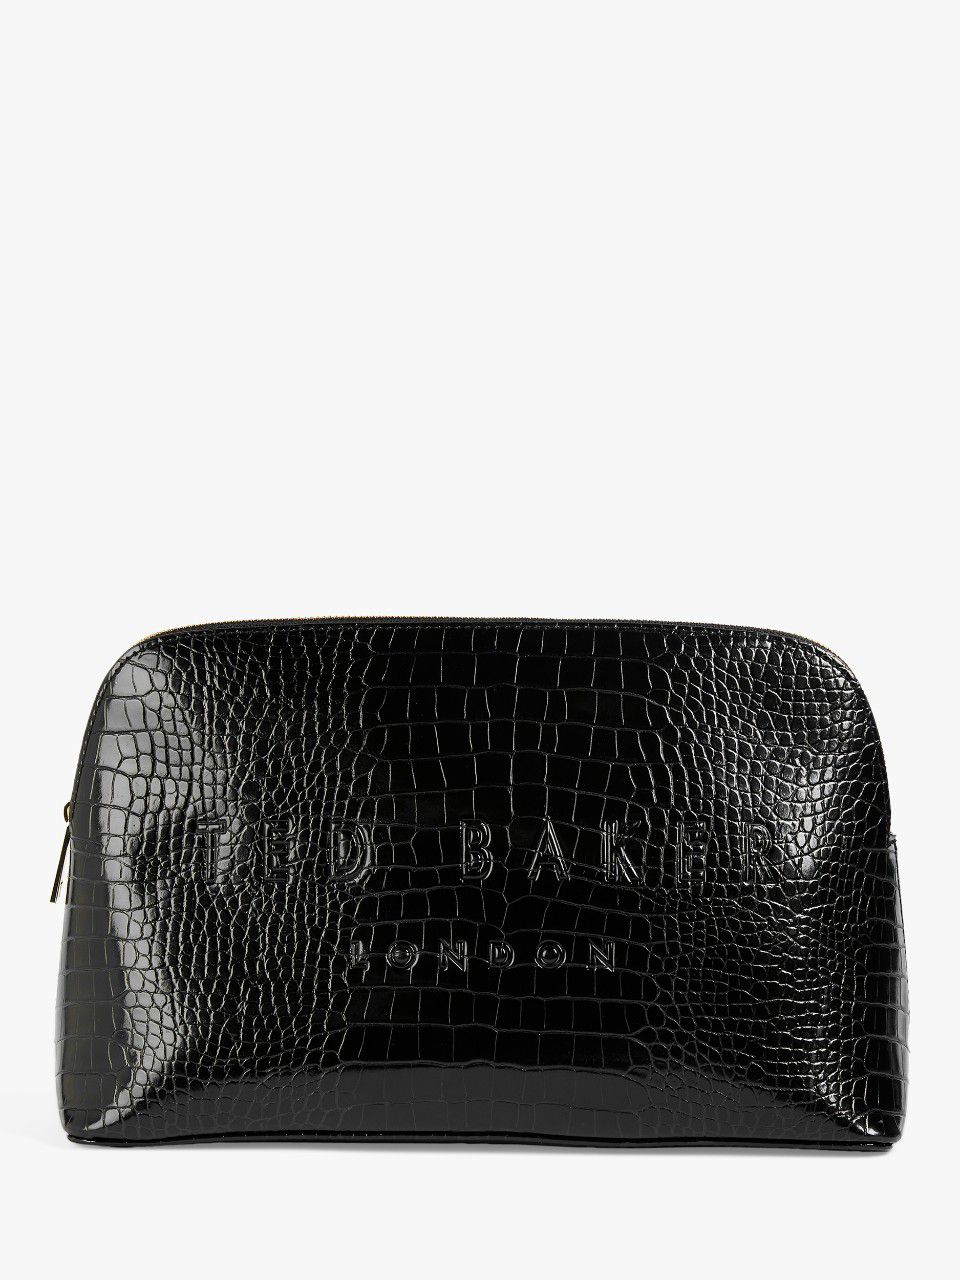 Ted Baker Crocana Croc Effect Makeup Bag, Black, One Size 1